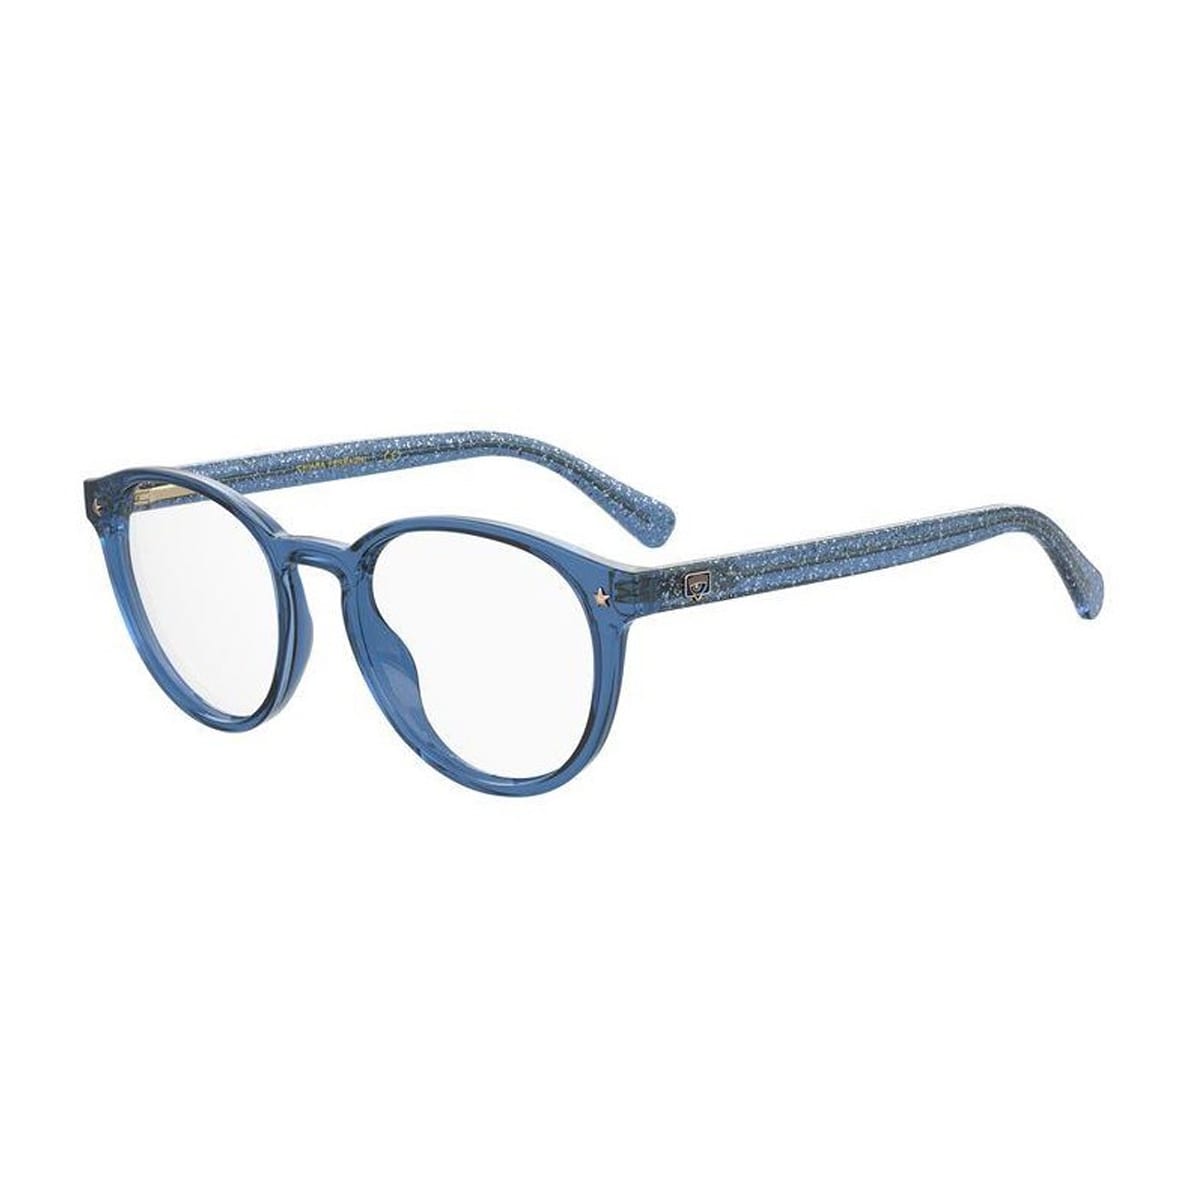 Chiara Ferragni 119l4am0a - -  Glasses In Blu